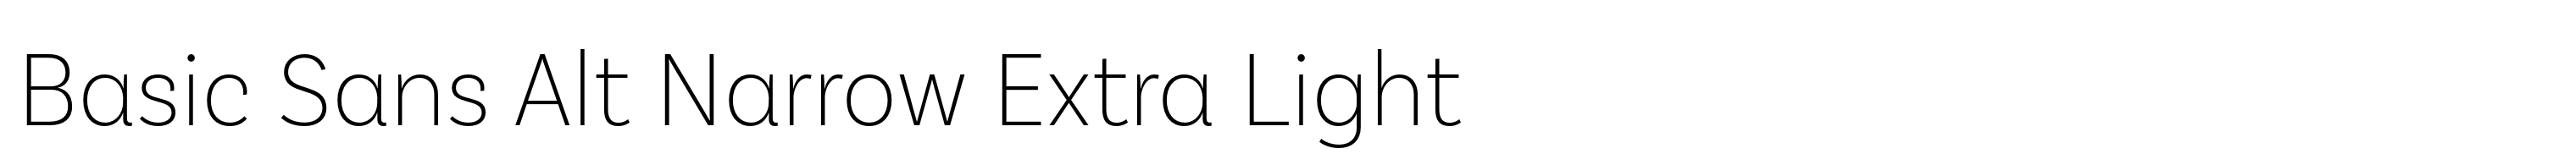 Basic Sans Alt Narrow Extra Light